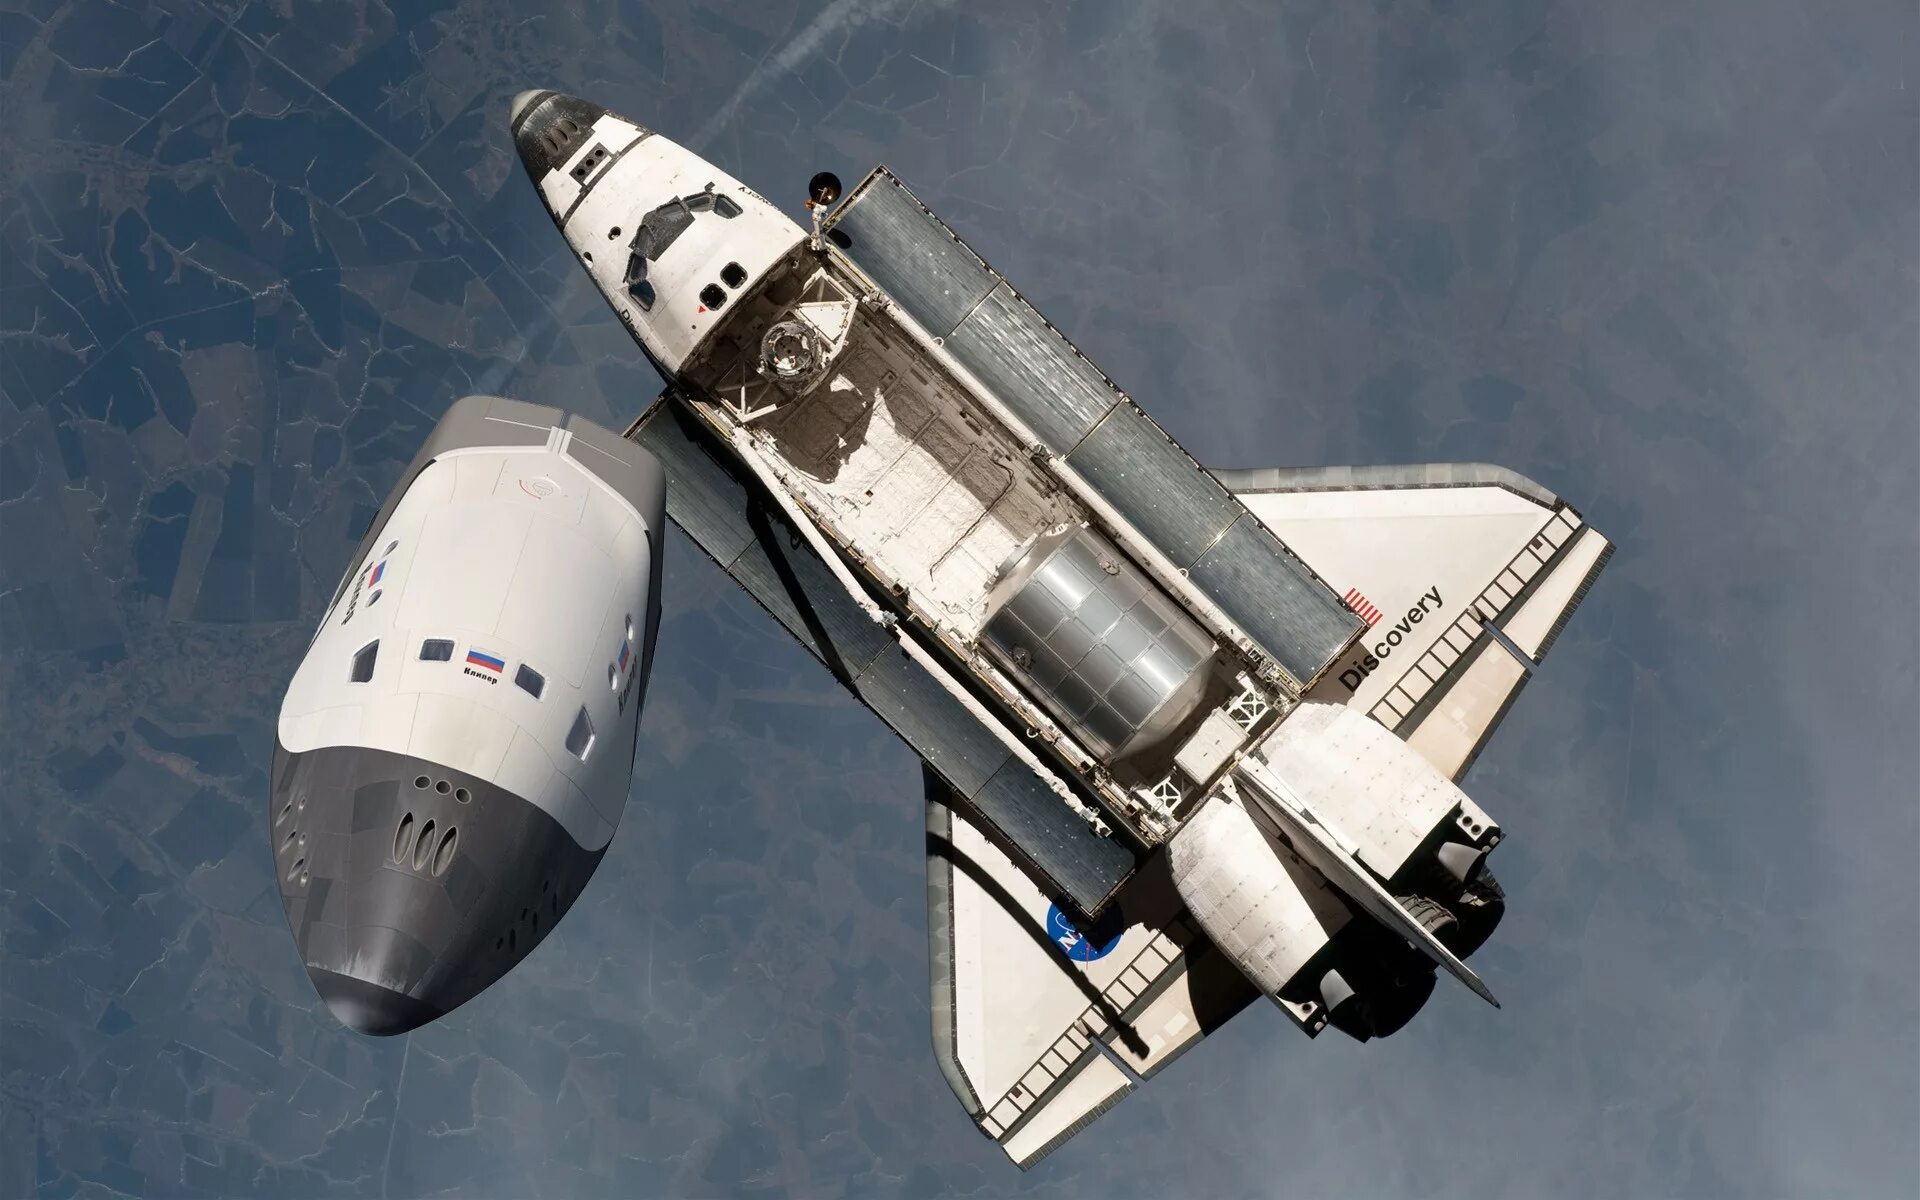 Первый космический челнок. Спейс шаттл космический корабль. Спейс шаттл 1969. Космический шаттл НАСА Дискавери. Космический челнок Спейс шаттл.